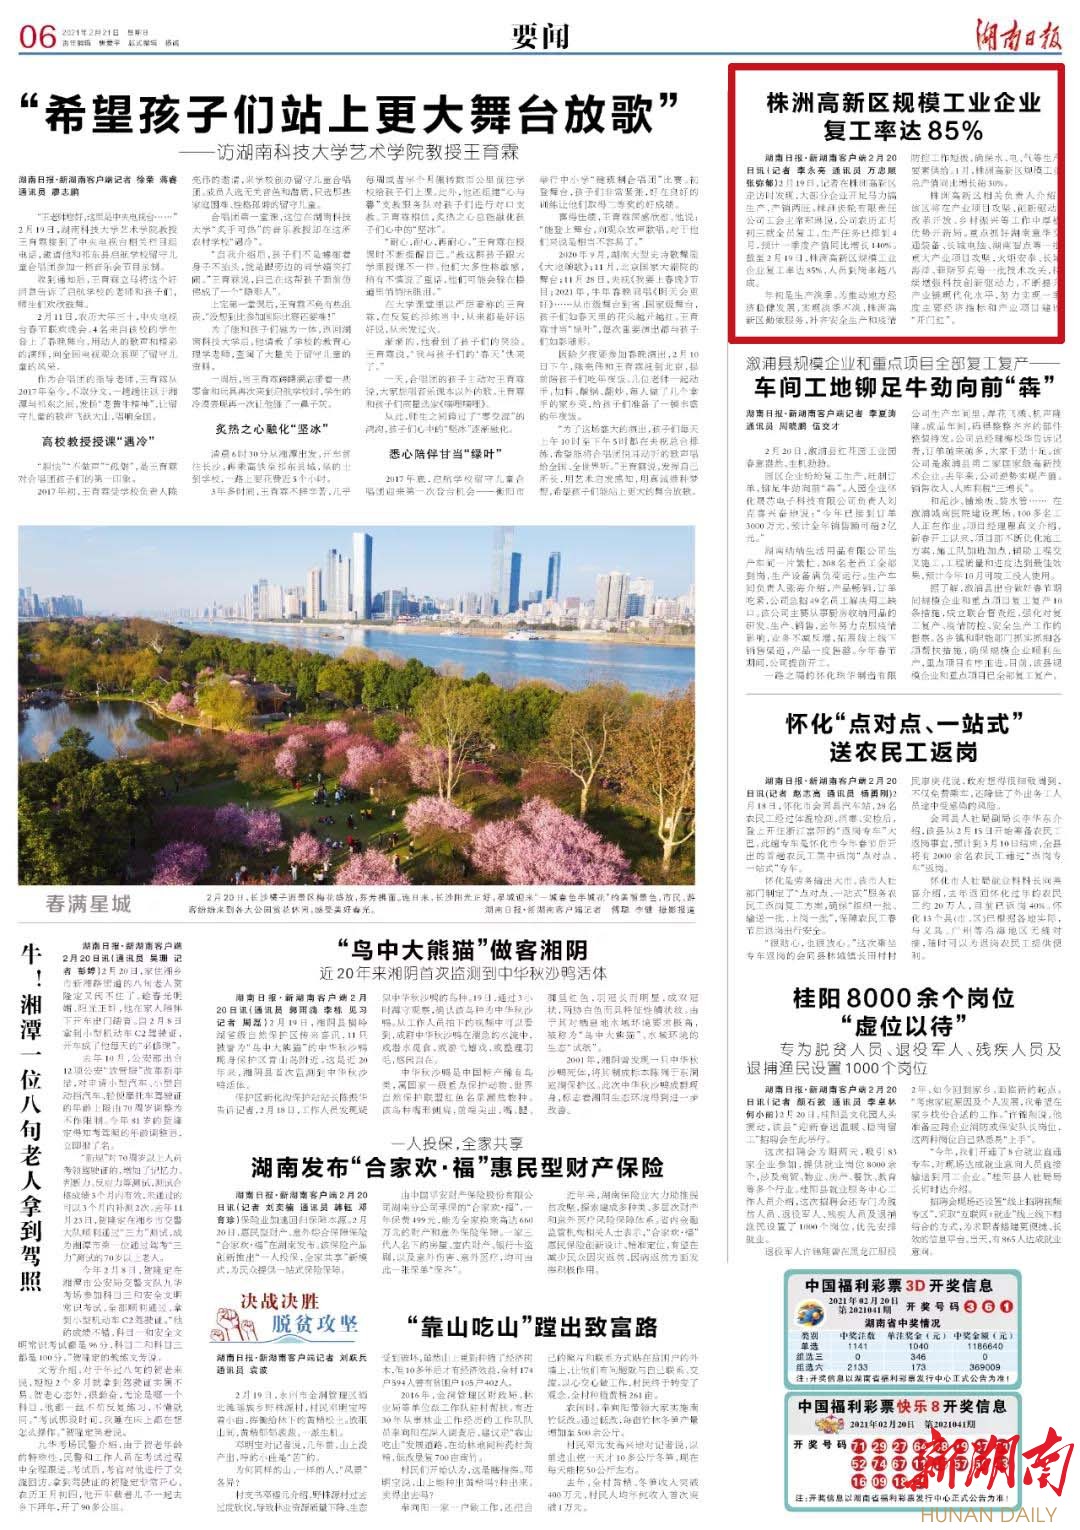 湖南日报 | 株洲高新区规模工业企业复工率达85%